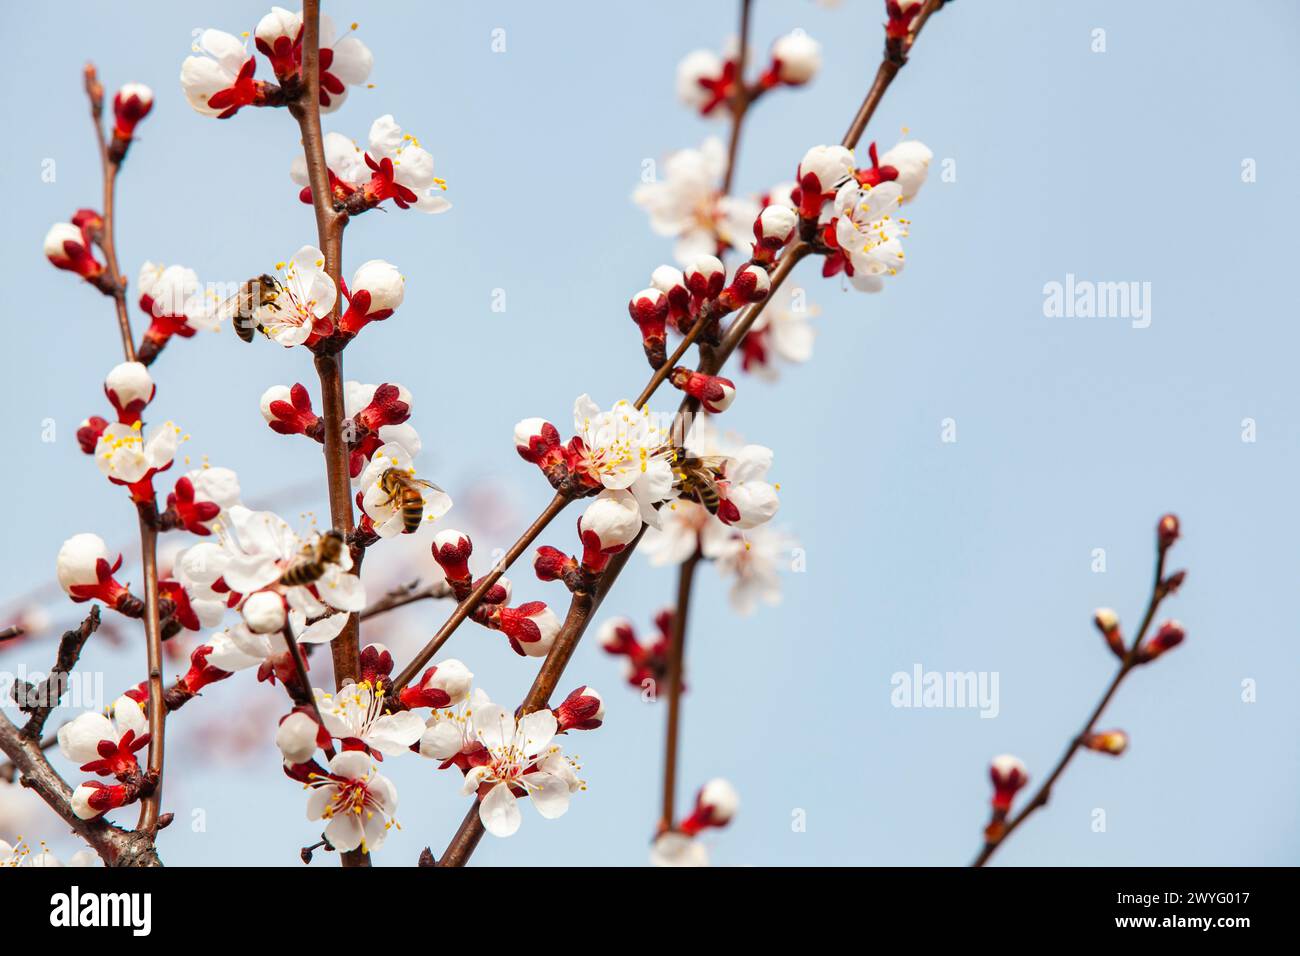 Le api impollinano un ramo di albicocca in fiore. Problemi di apicoltura e di coltivazione della frutta. Primo piano, copia spazio. Foto Stock